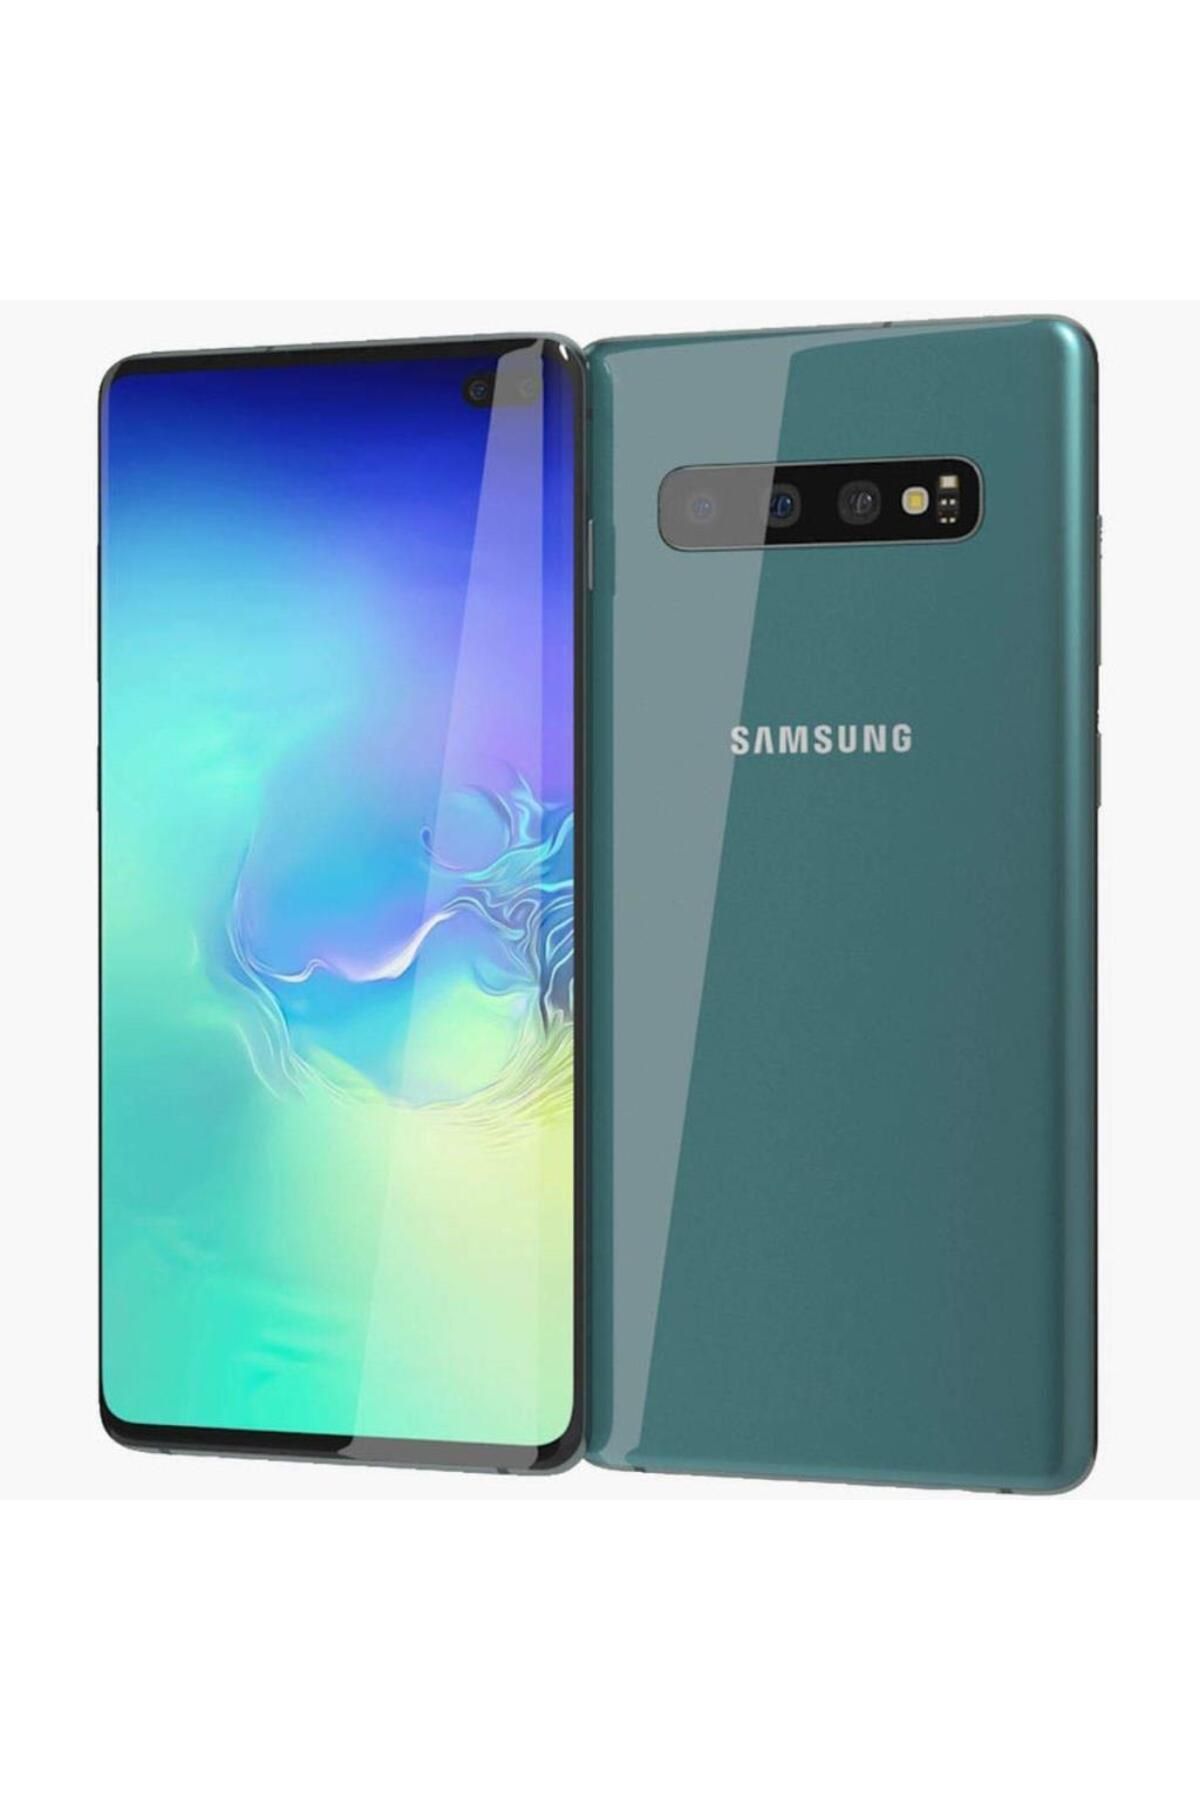 Samsung Yenilenmiş Samsung Galaxy S10 Plus 128 GB Yeşil B Kalite